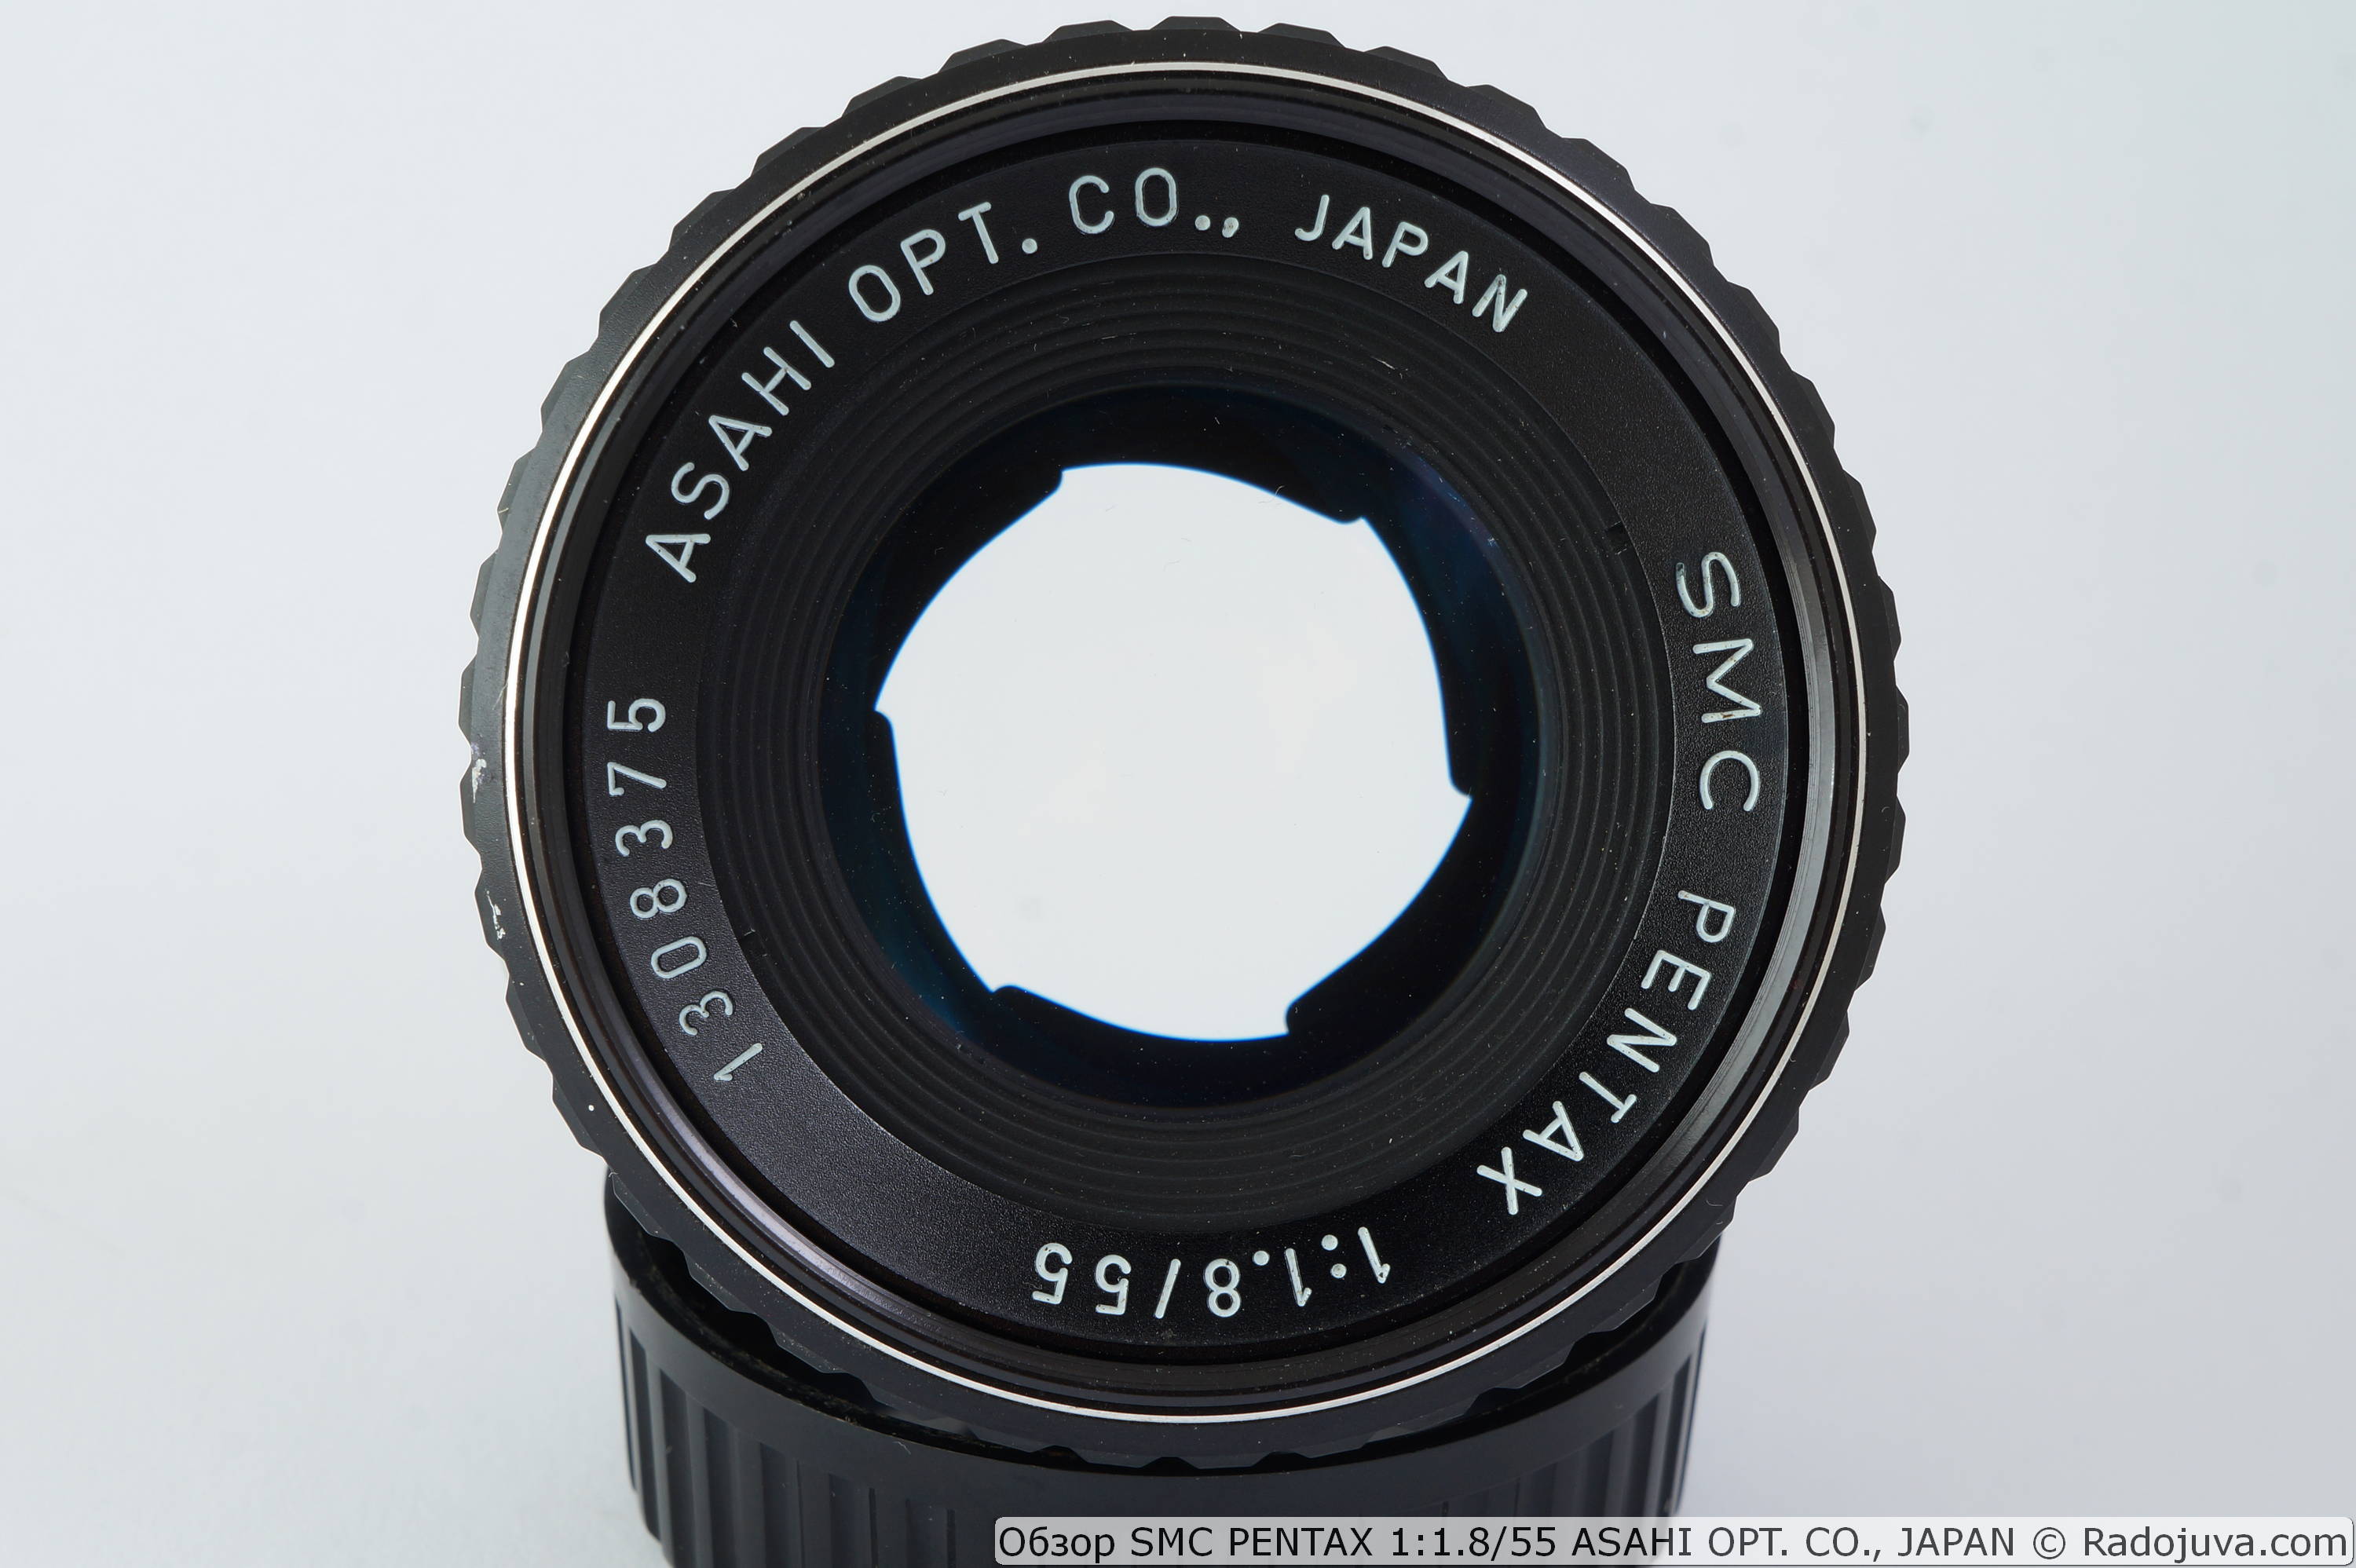 SMC PENTAX 1: 1.8 / 55 ASAHI OPT. CO., JAPAN